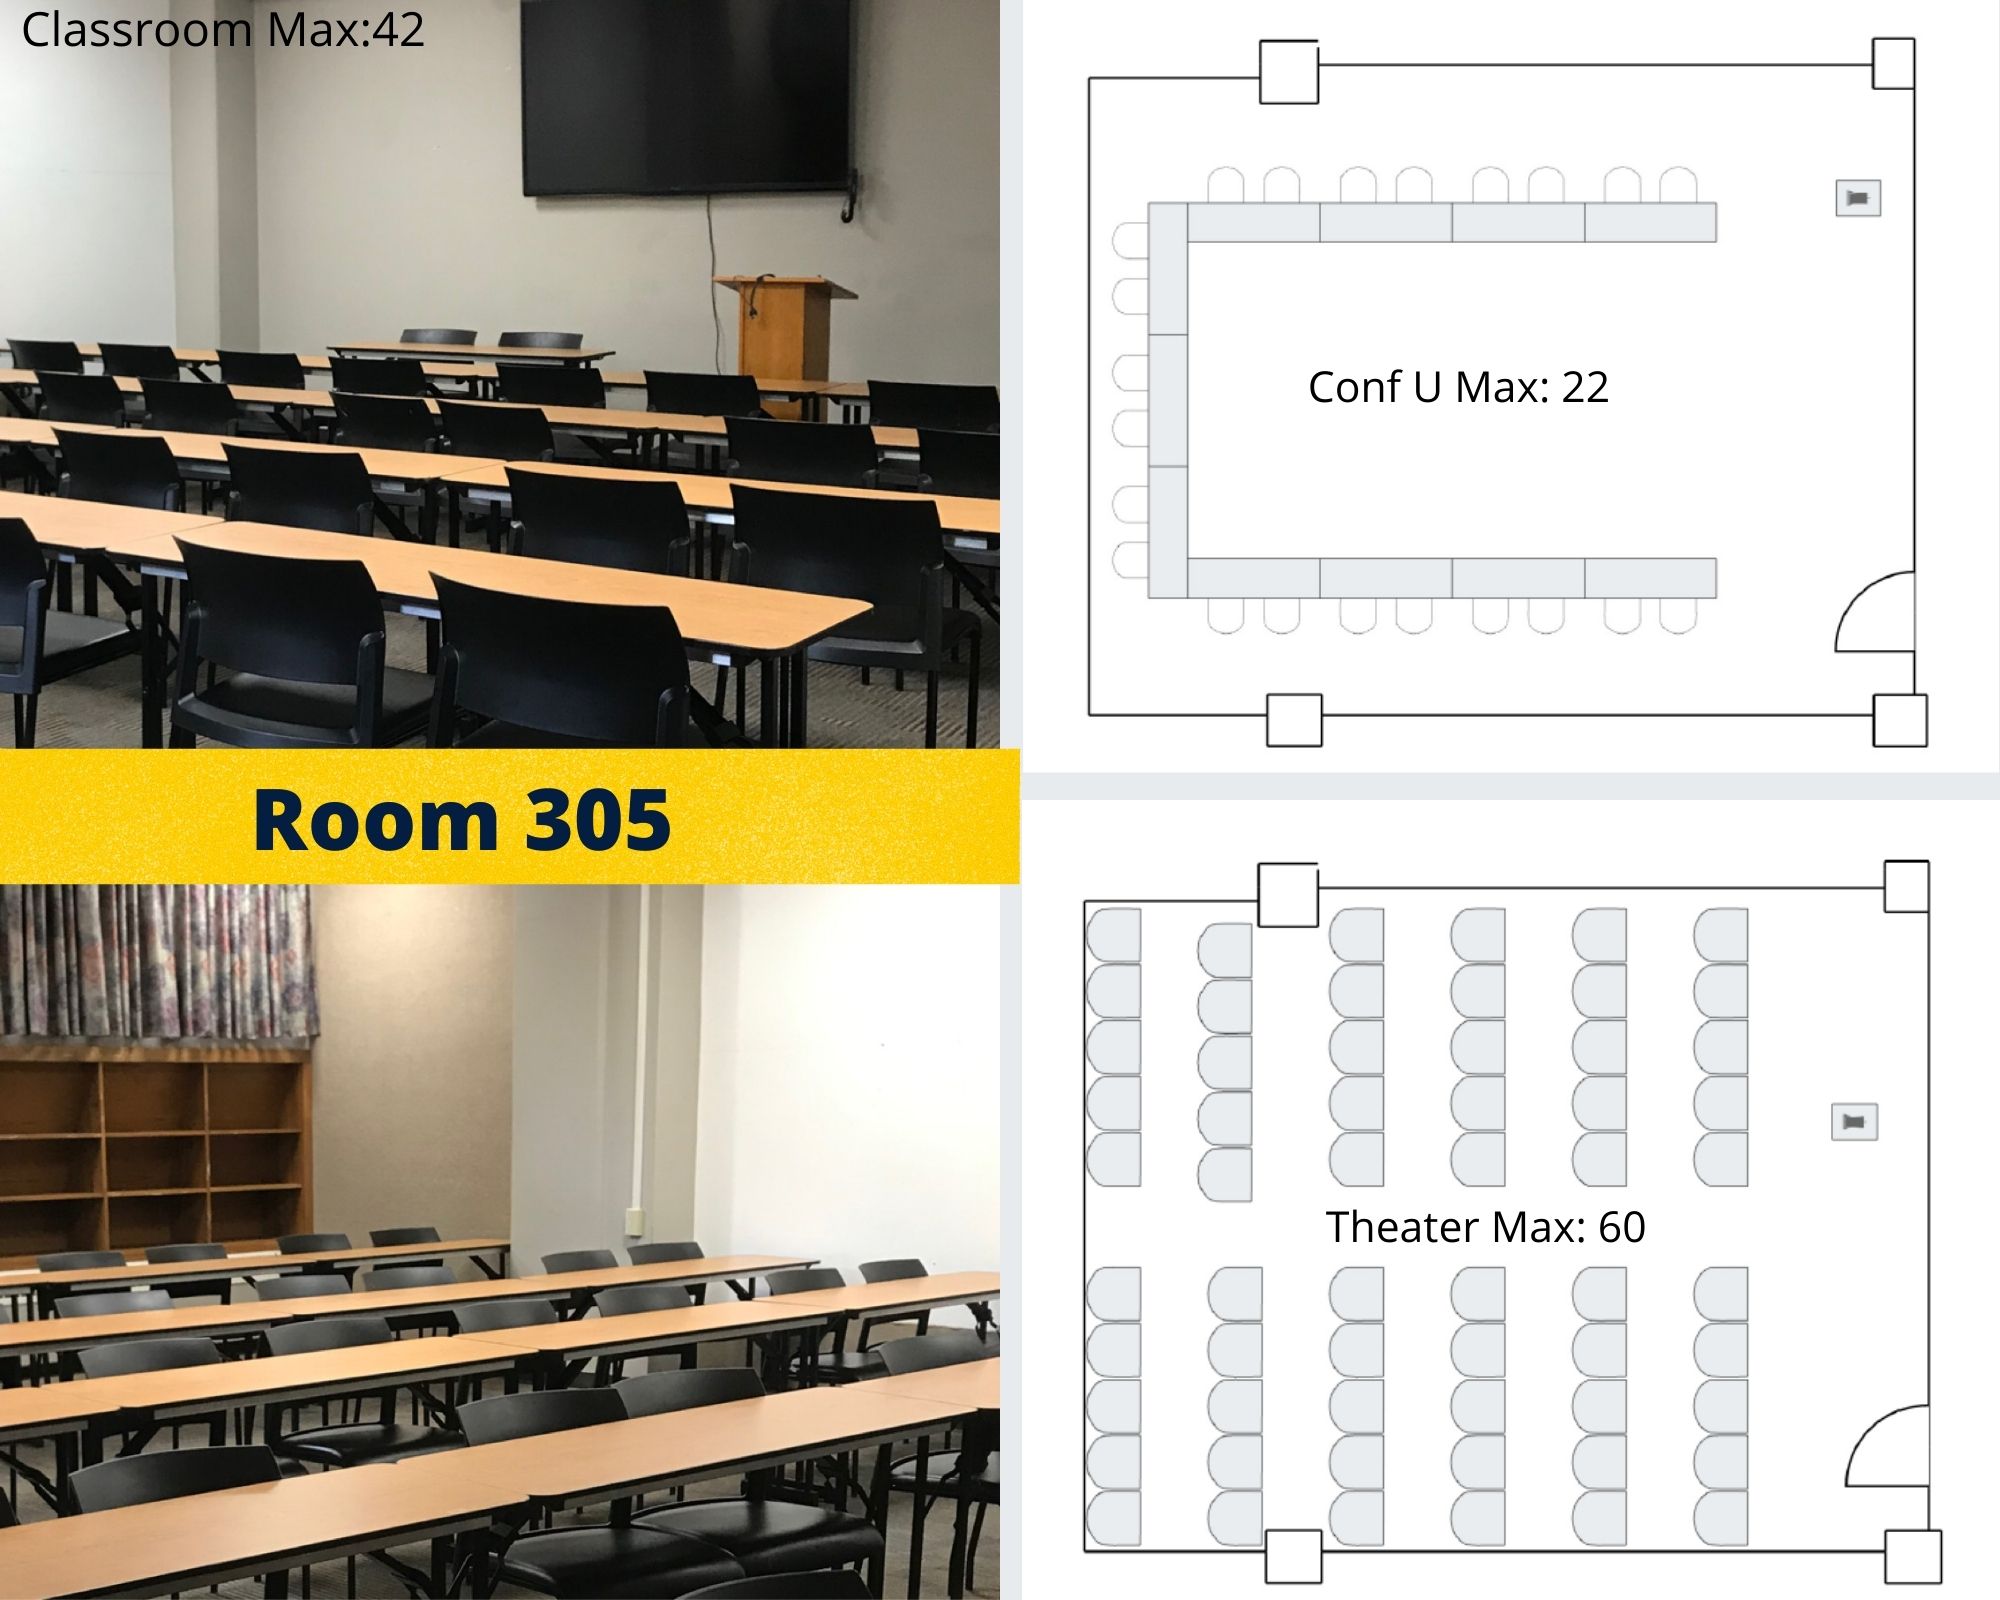 Meeting Room 305